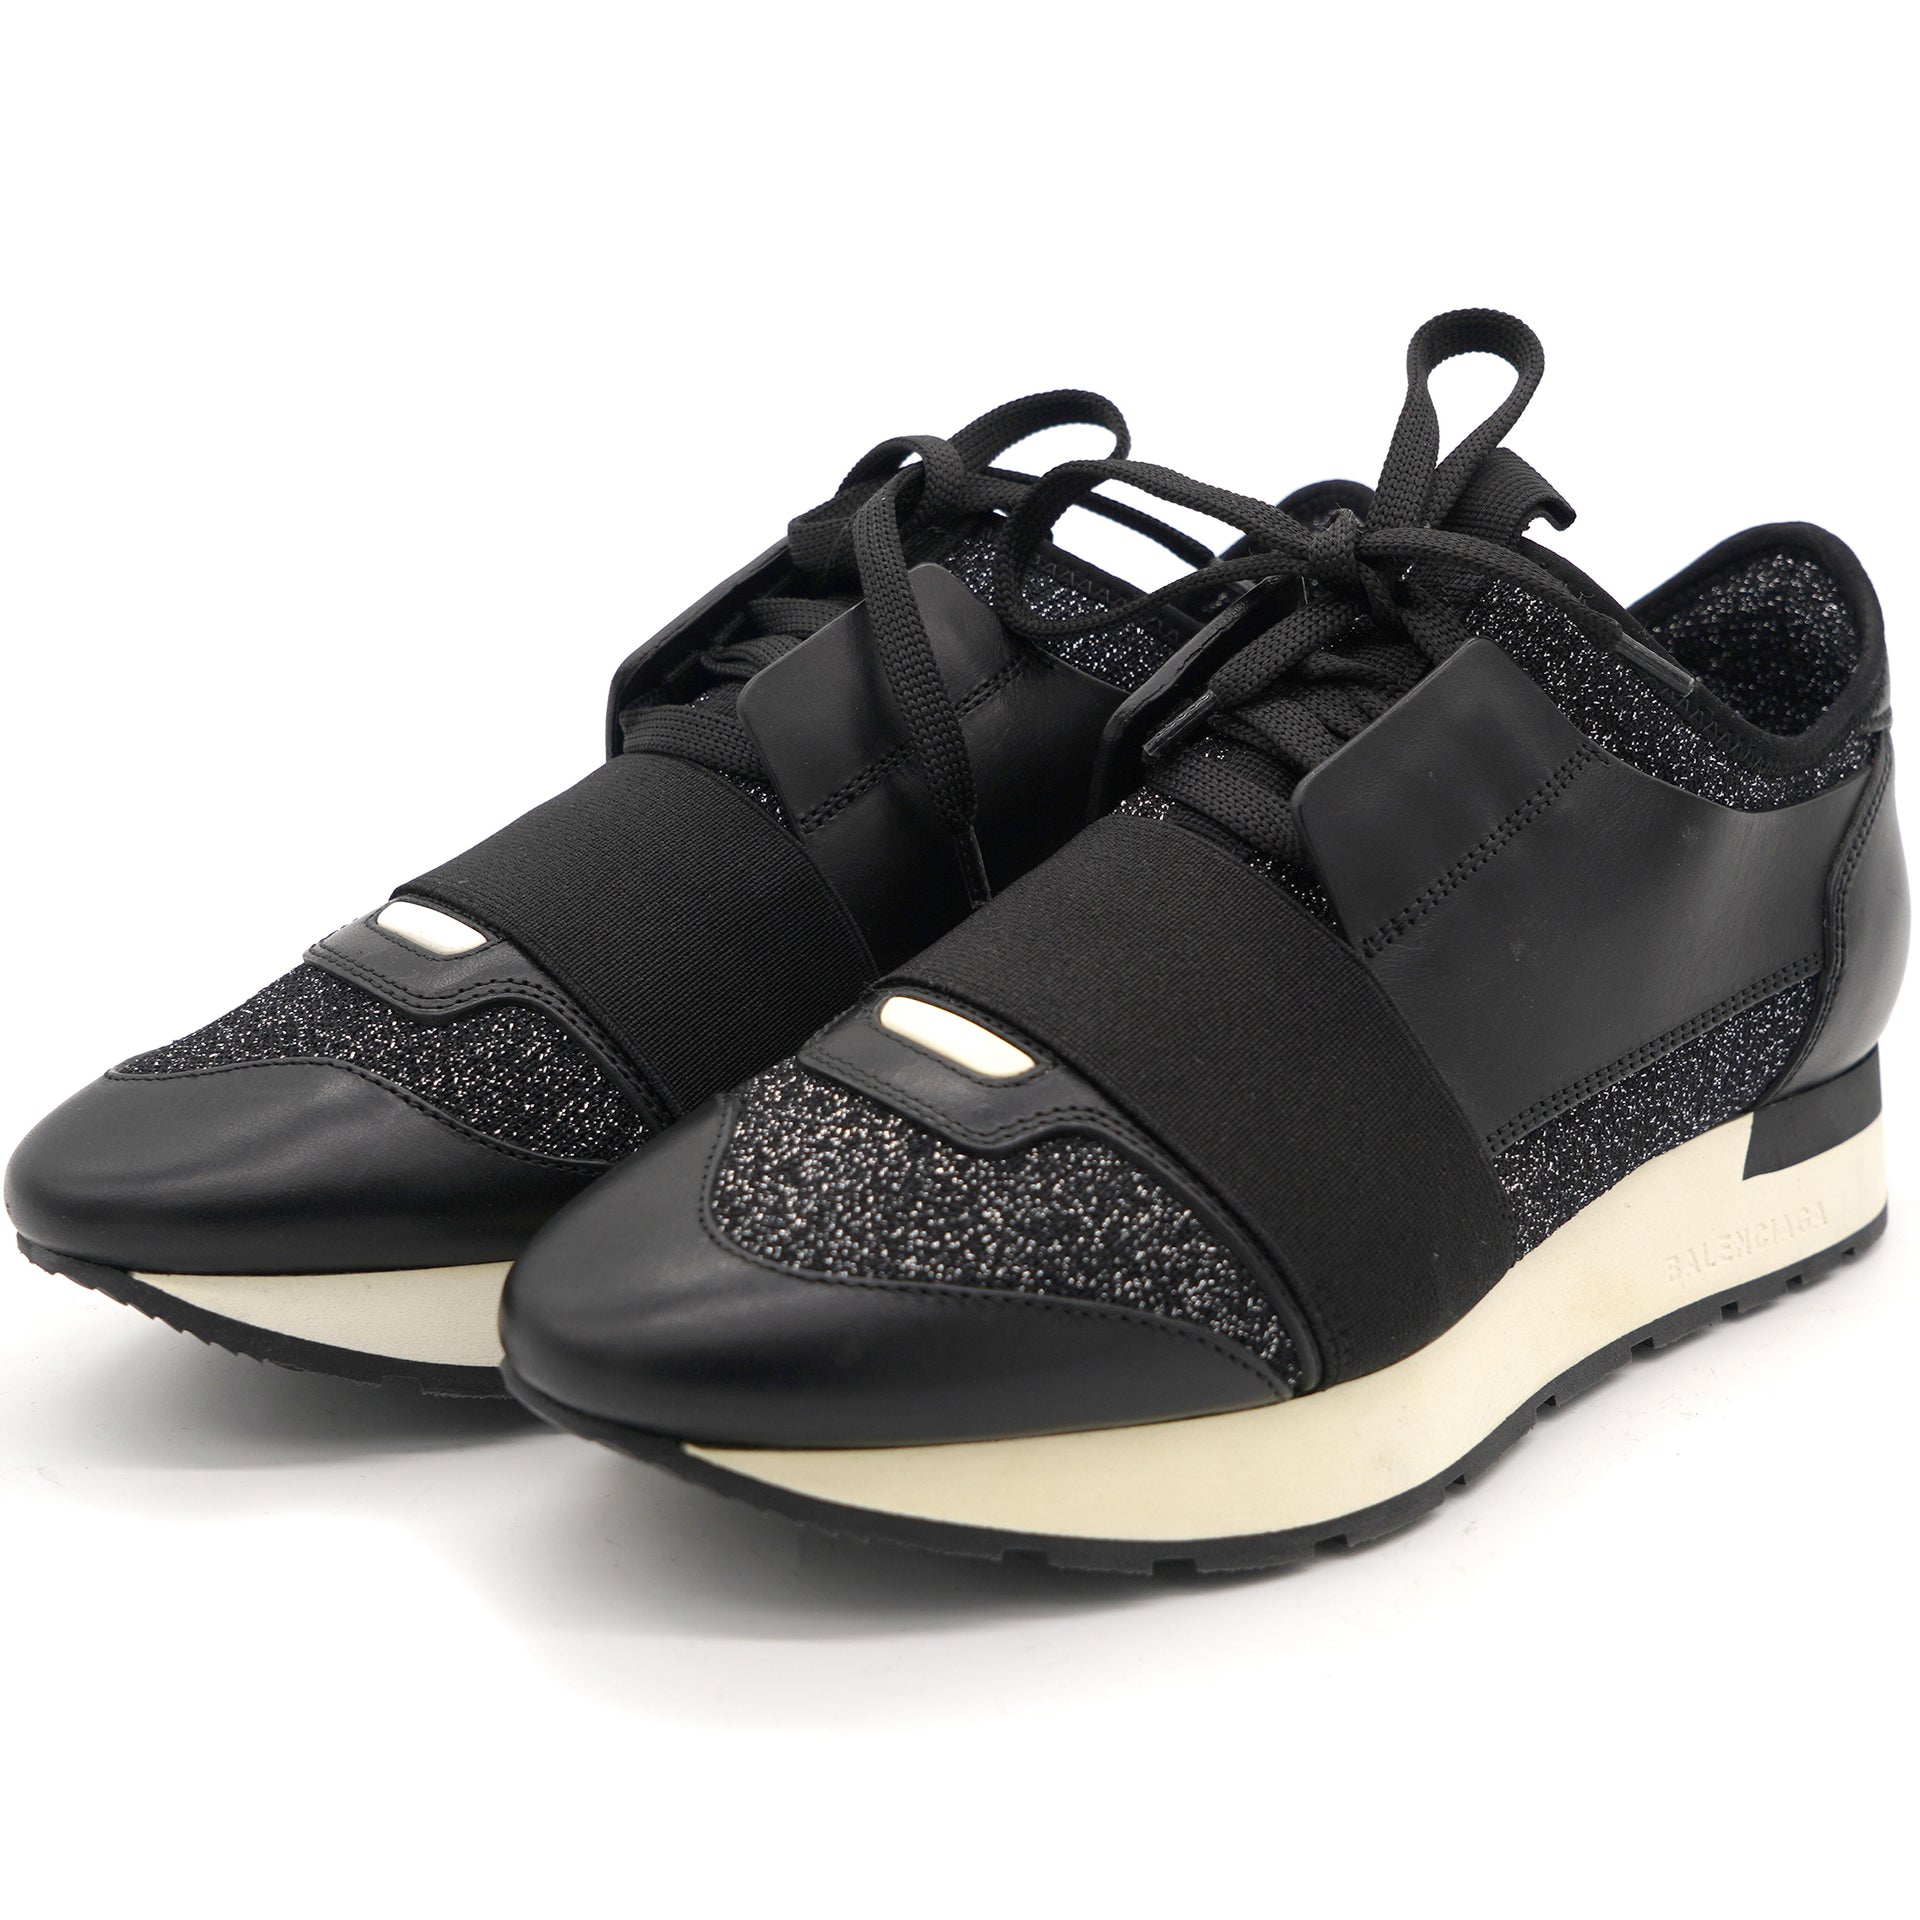 Platform Black Glitter Fabric Black Race Runner Sneakers 36